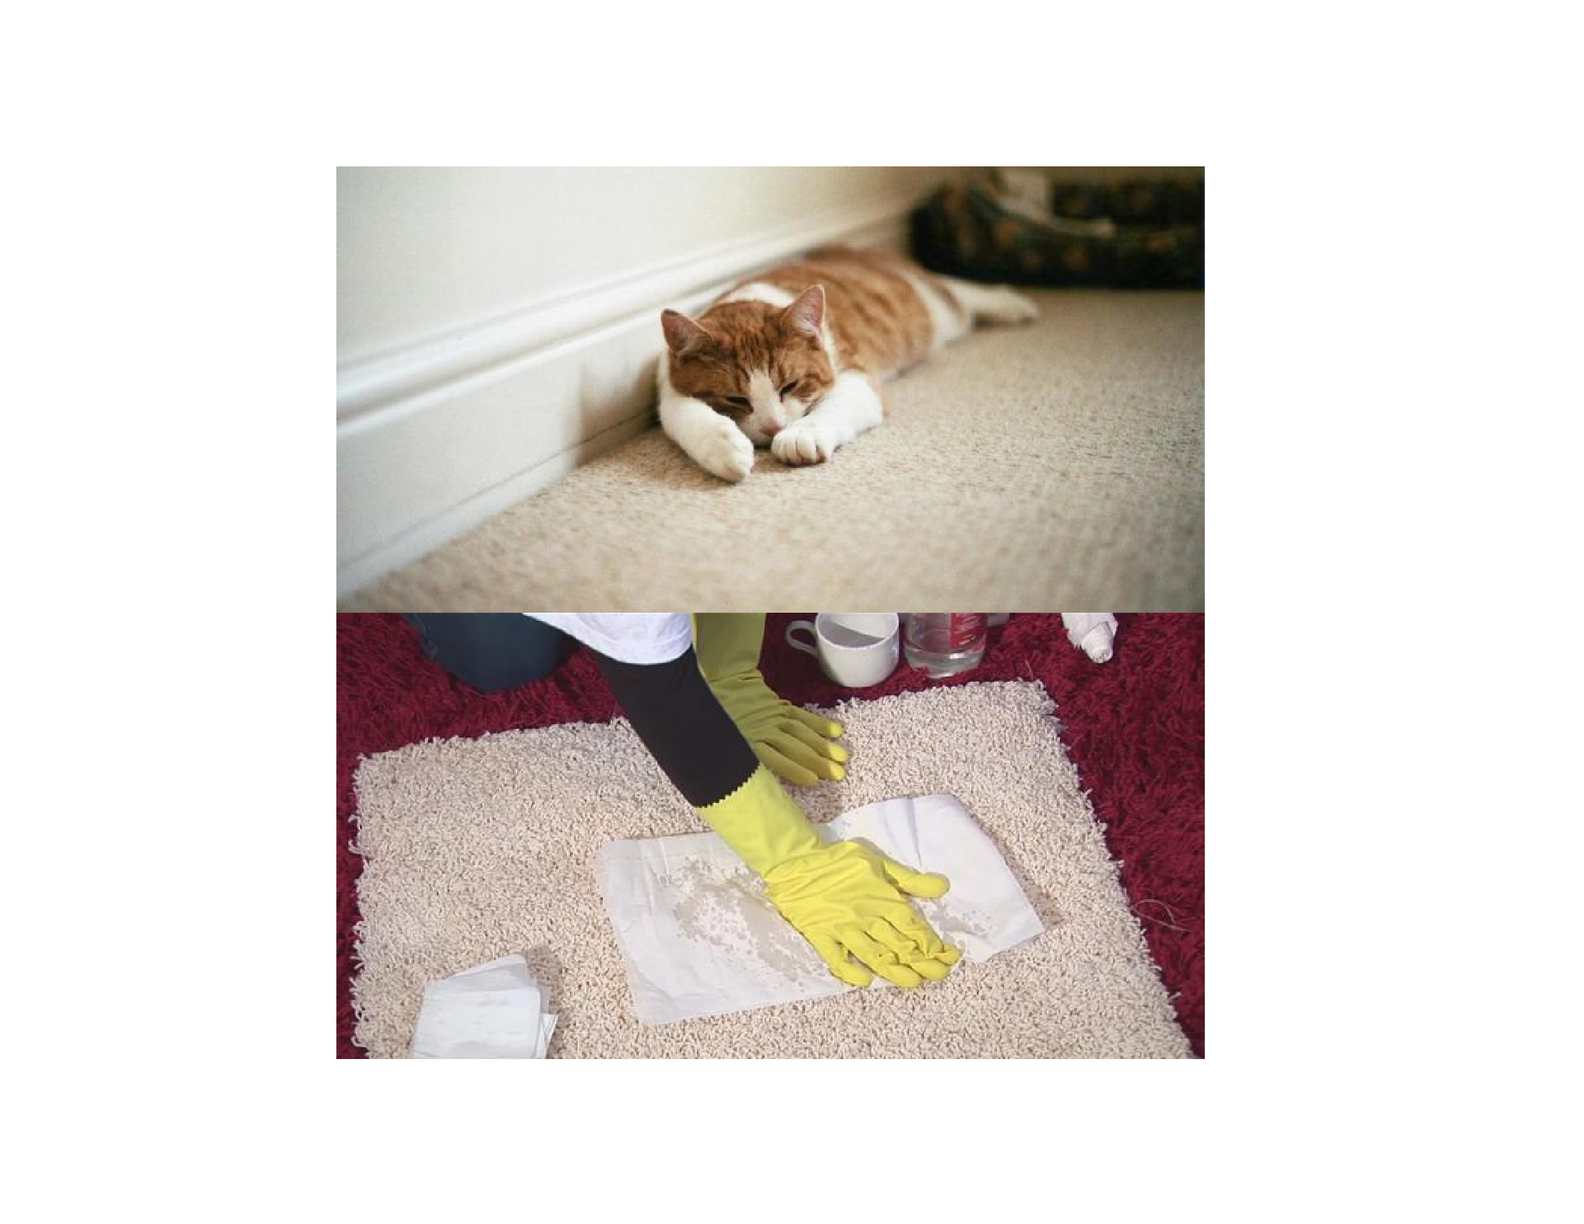 Лучшие способы чистки ковров в домашних условиях - строительный блог вити петрова